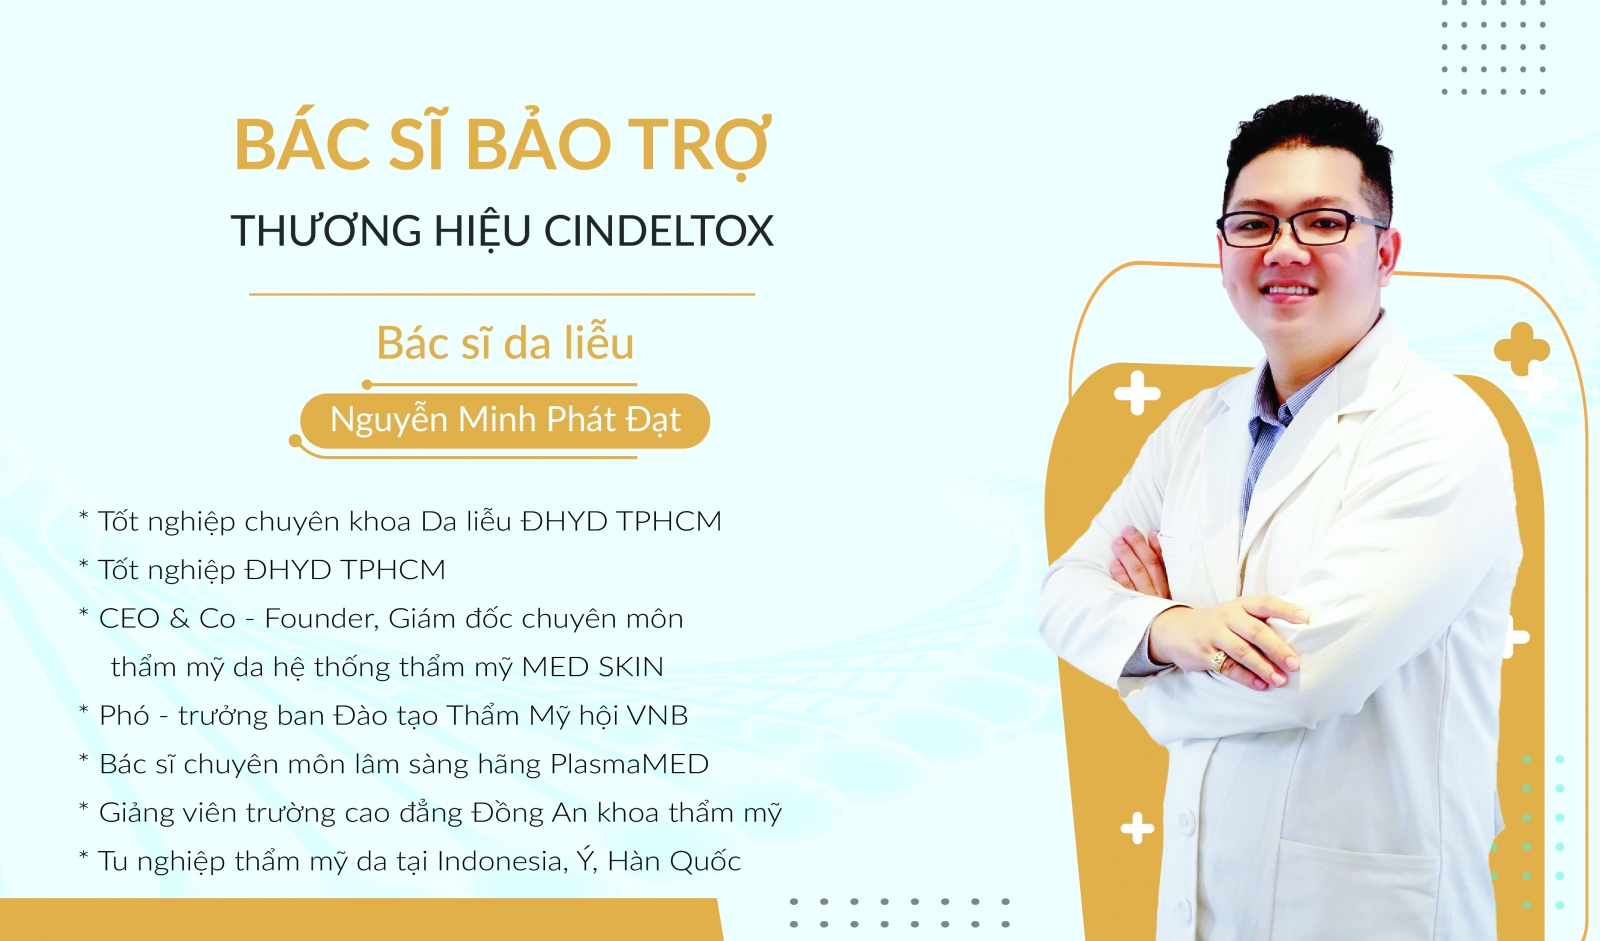 Cindeltox công bố Bác sĩ Bảo trợ thương hiệu Cindeltox - Bác sĩ da liễu Nguyễn Minh Phát Đạt